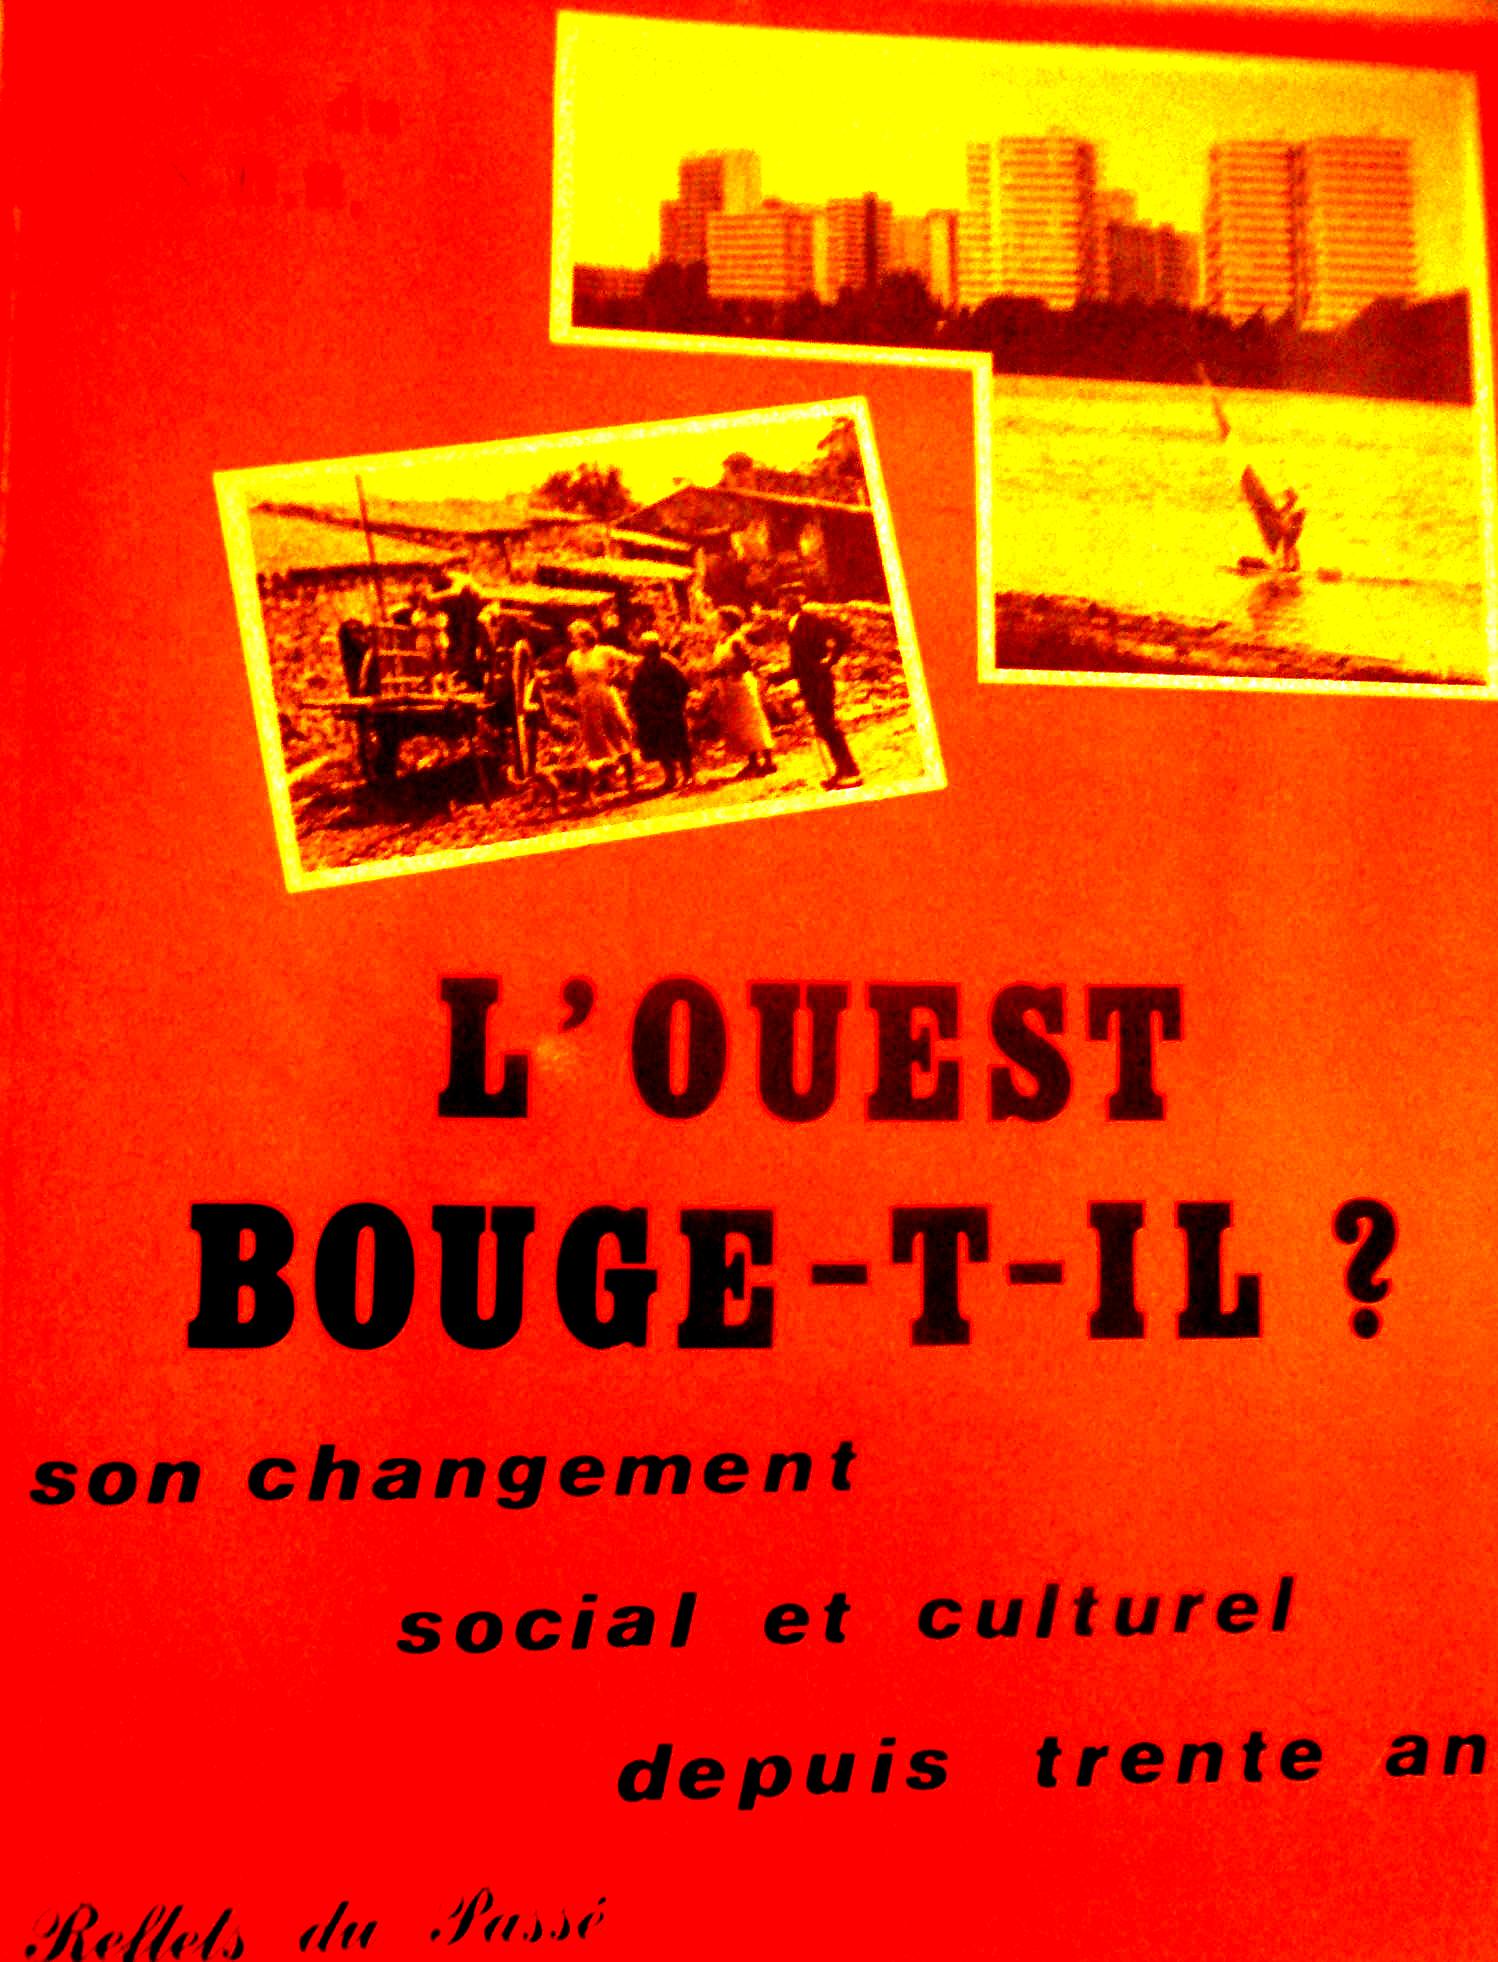 Jacky Réault Lersco CNRS Ouvriers de l'Ouest L'Ouest bouge-t-il ? 1983